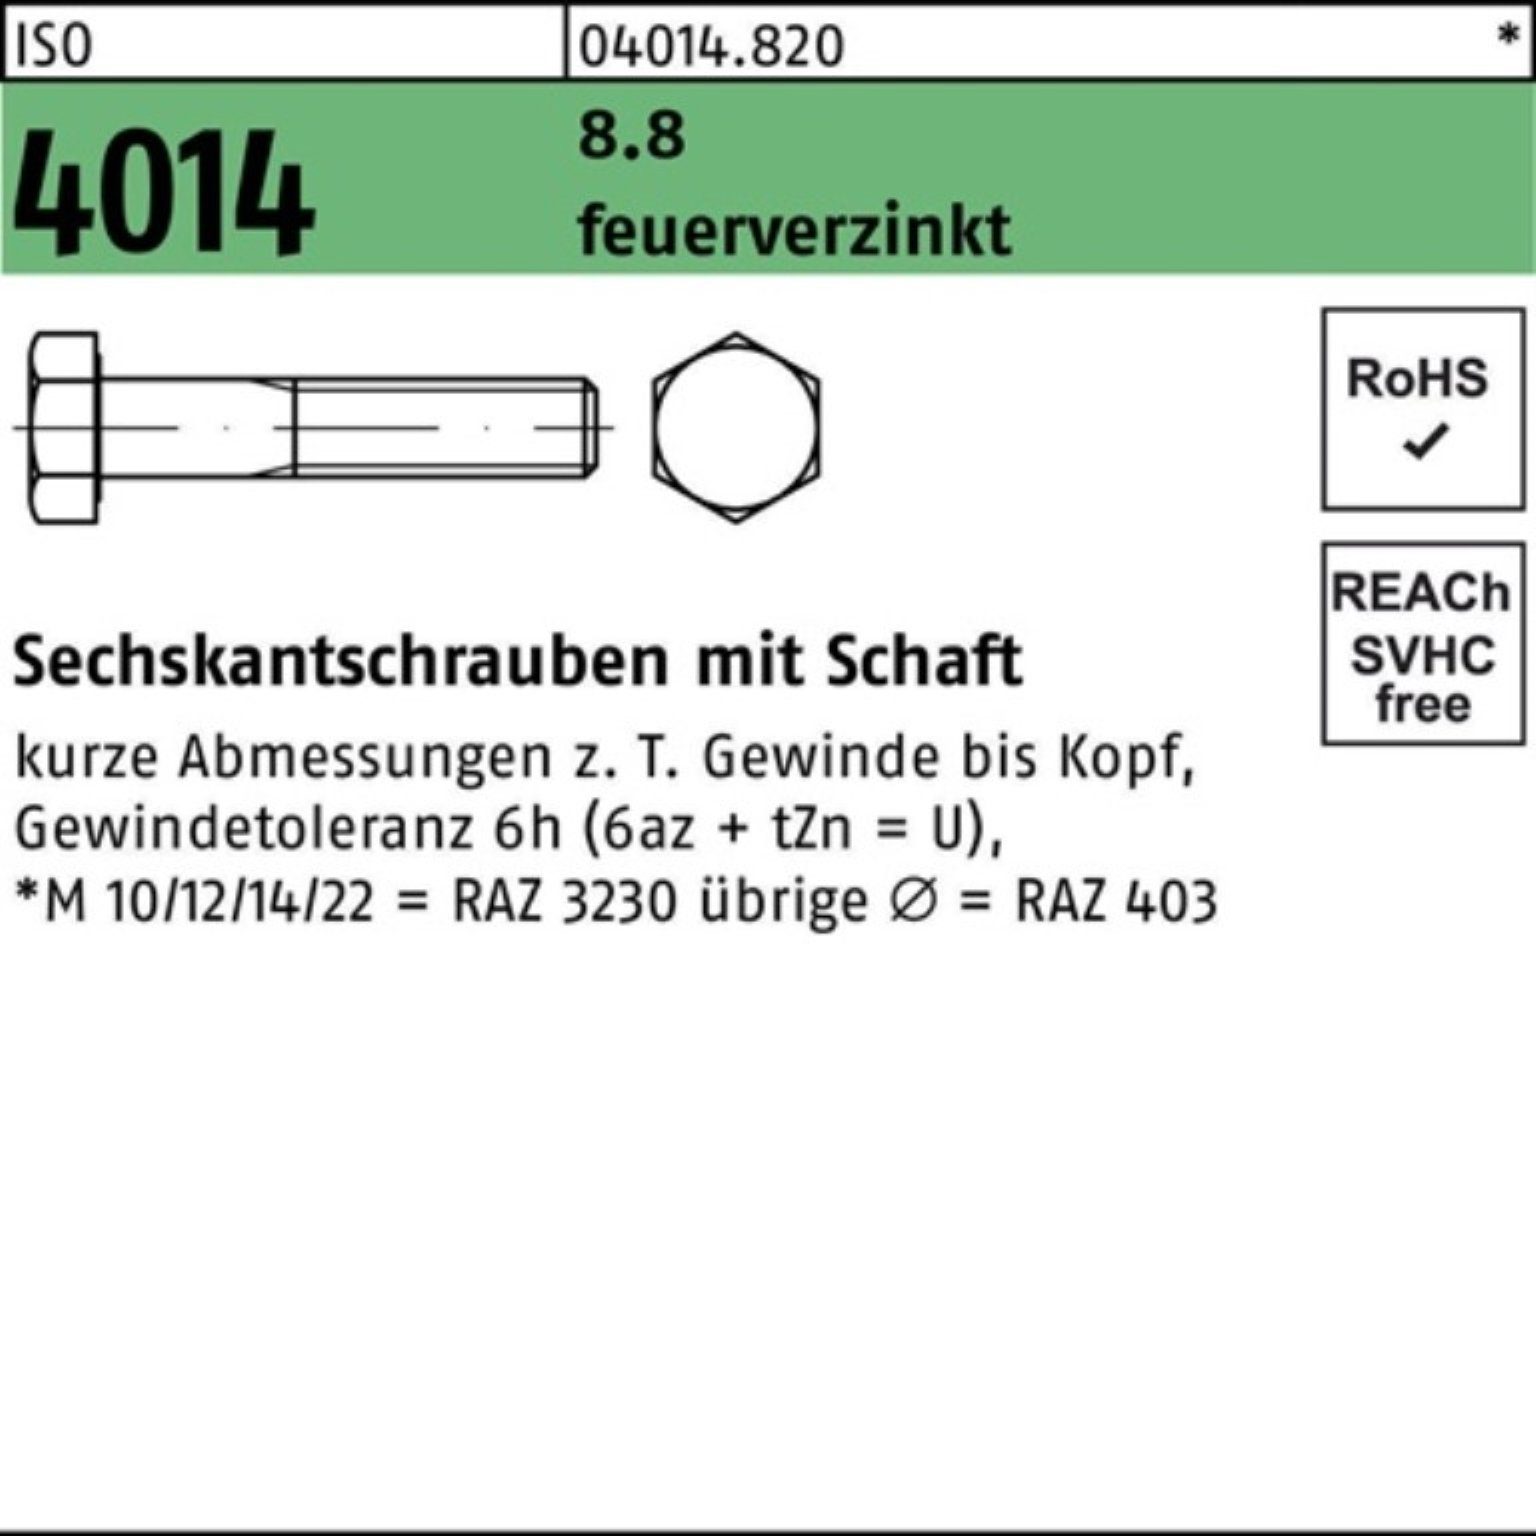 Bufab Sechskantschraube 100er Pack Sechskantschraube ISO 4014 Schaft M24x 180 8.8 feuerverz. 1